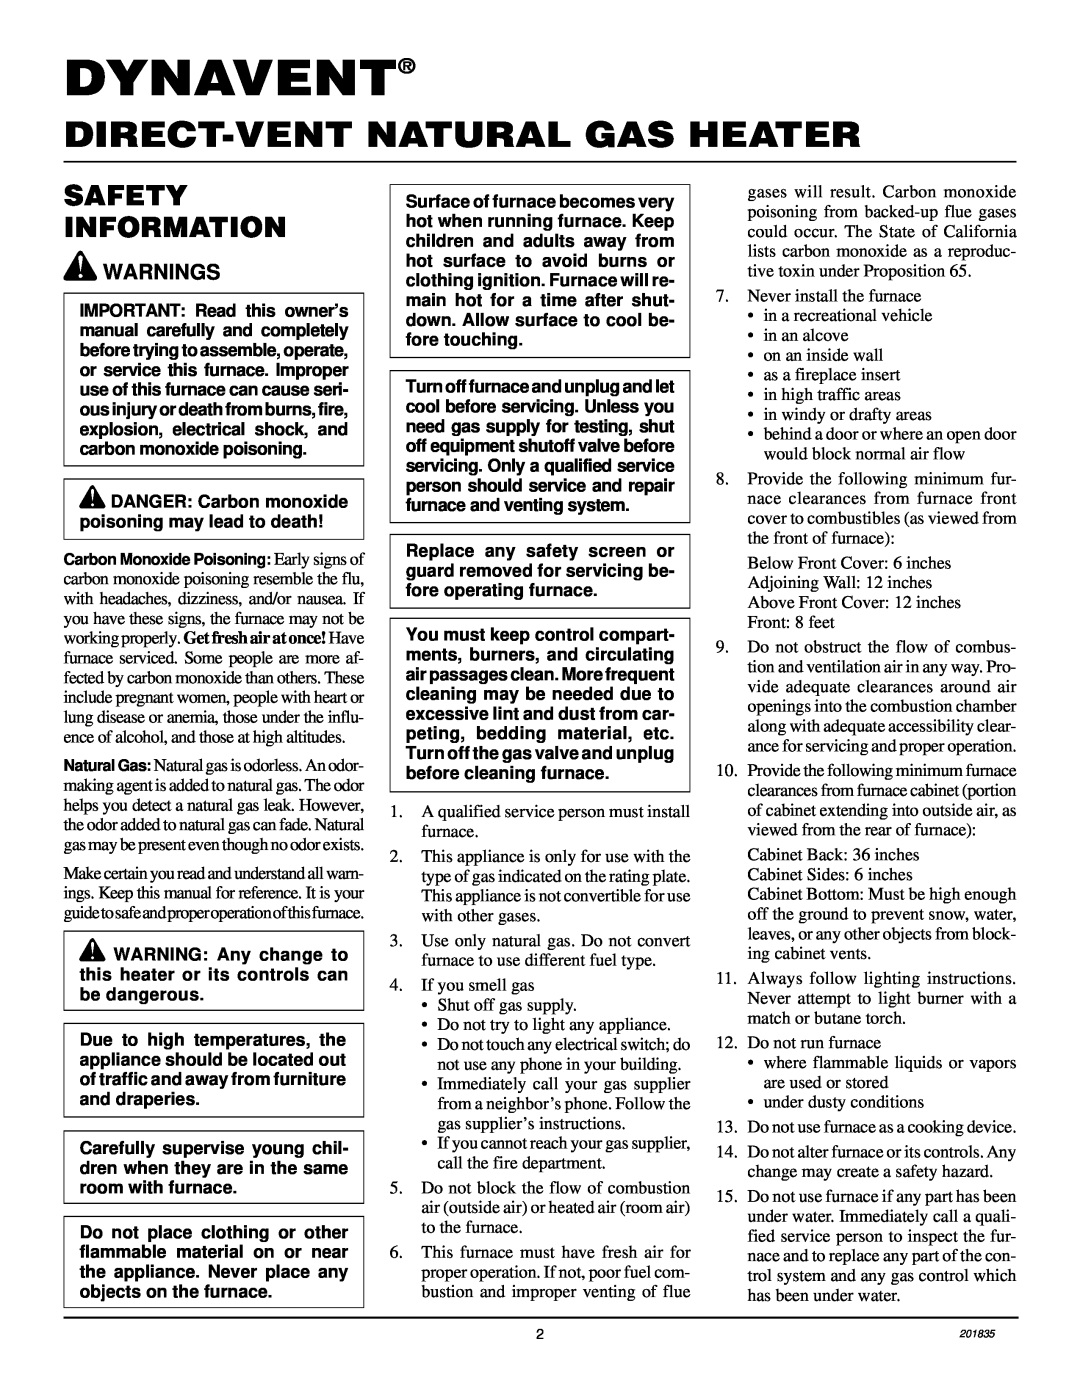 Desa DNV40NB, DNV25NB installation manual Dynavent, Direct-Ventnatural Gas Heater, Safety Information 